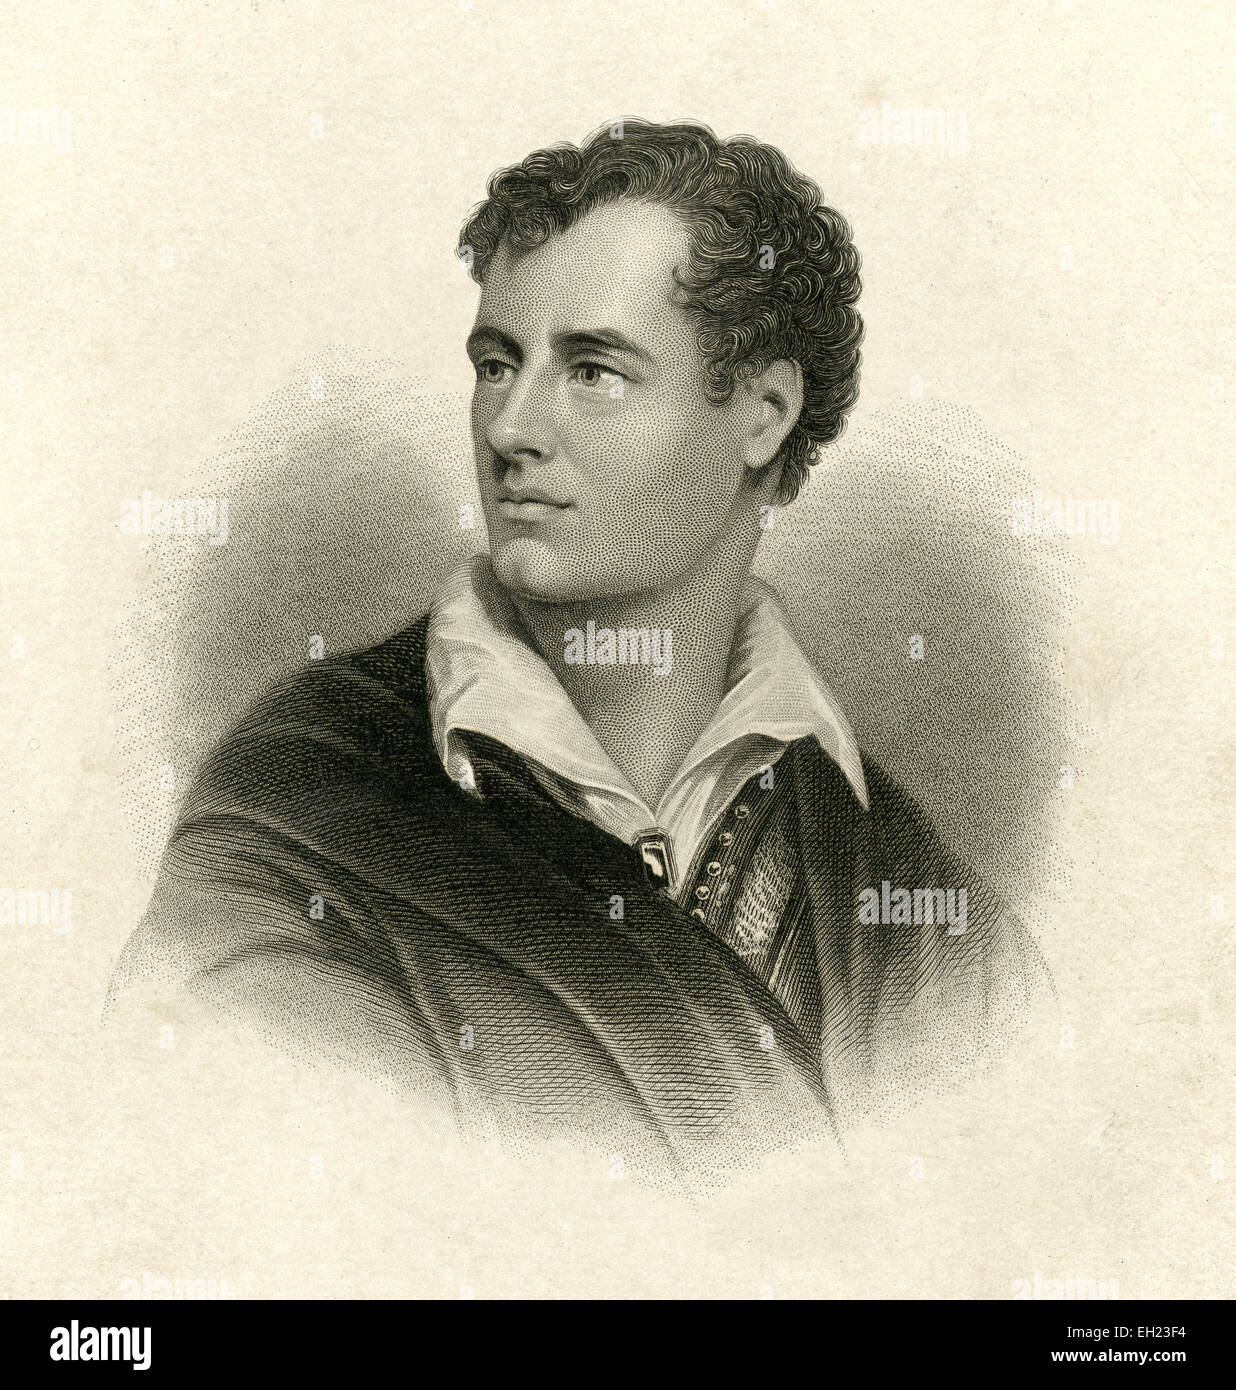 C Antique1885 gravure sur acier, Lord Byron. George Gordon Byron, 6e baron Byron, George Gordon Noel plus tard, 6e baron Byron, FRS (22 janvier 1788 - 19 avril 1824), communément connu sous le nom de Lord Byron, était un poète anglais et une figure de proue dans le mouvement romantique. Entre Byron's oeuvres les plus connues sont les longs poèmes narratifs Don Juan et Childe Harold's Pilgrimage et court lyric elle marche dans la beauté. Banque D'Images